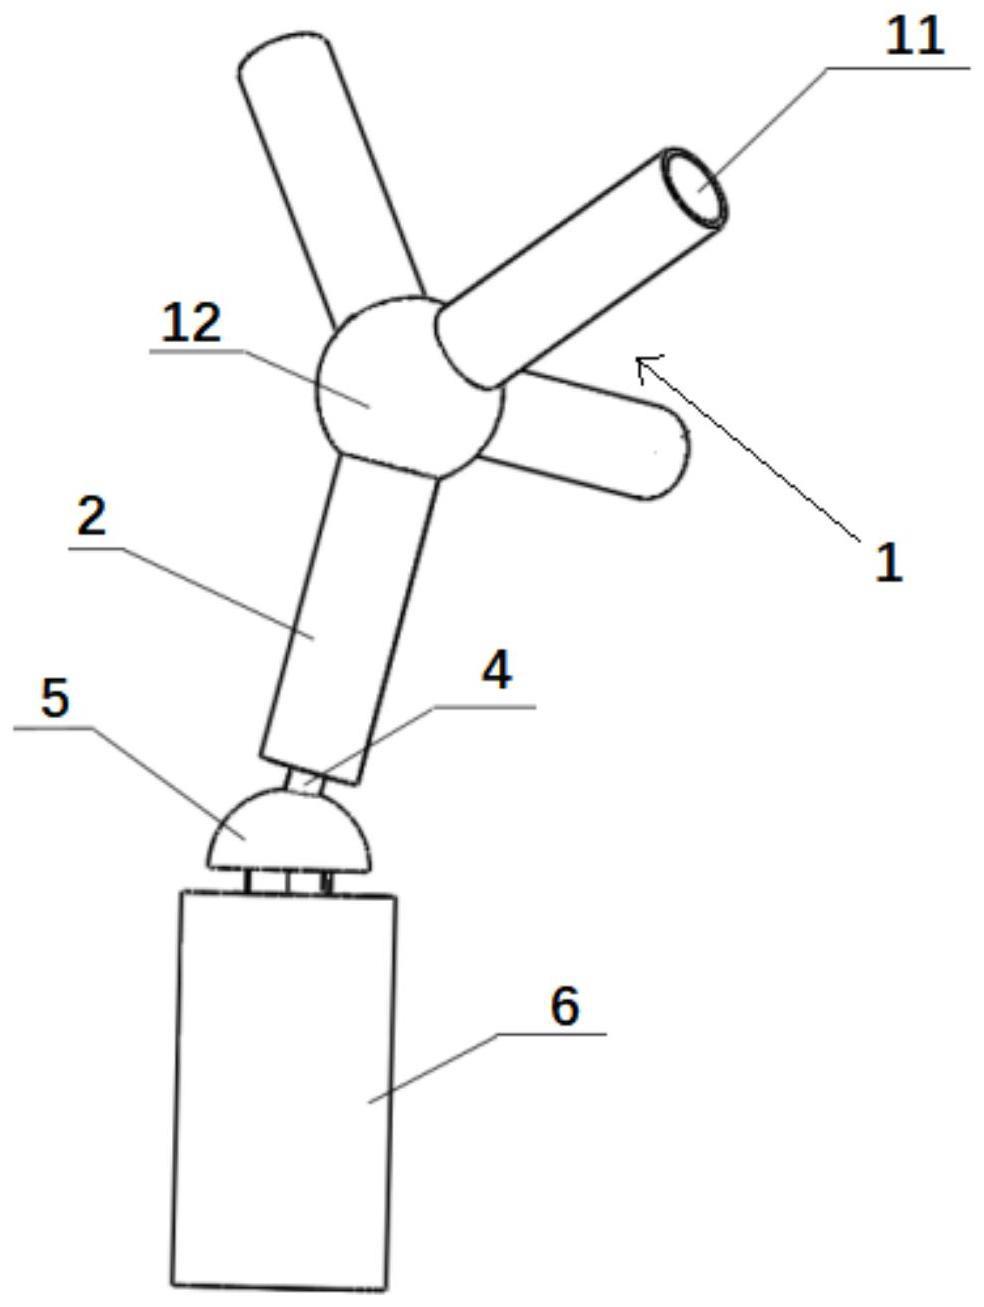 光伏支架与桩基础之间的连接装置及连接方法与流程